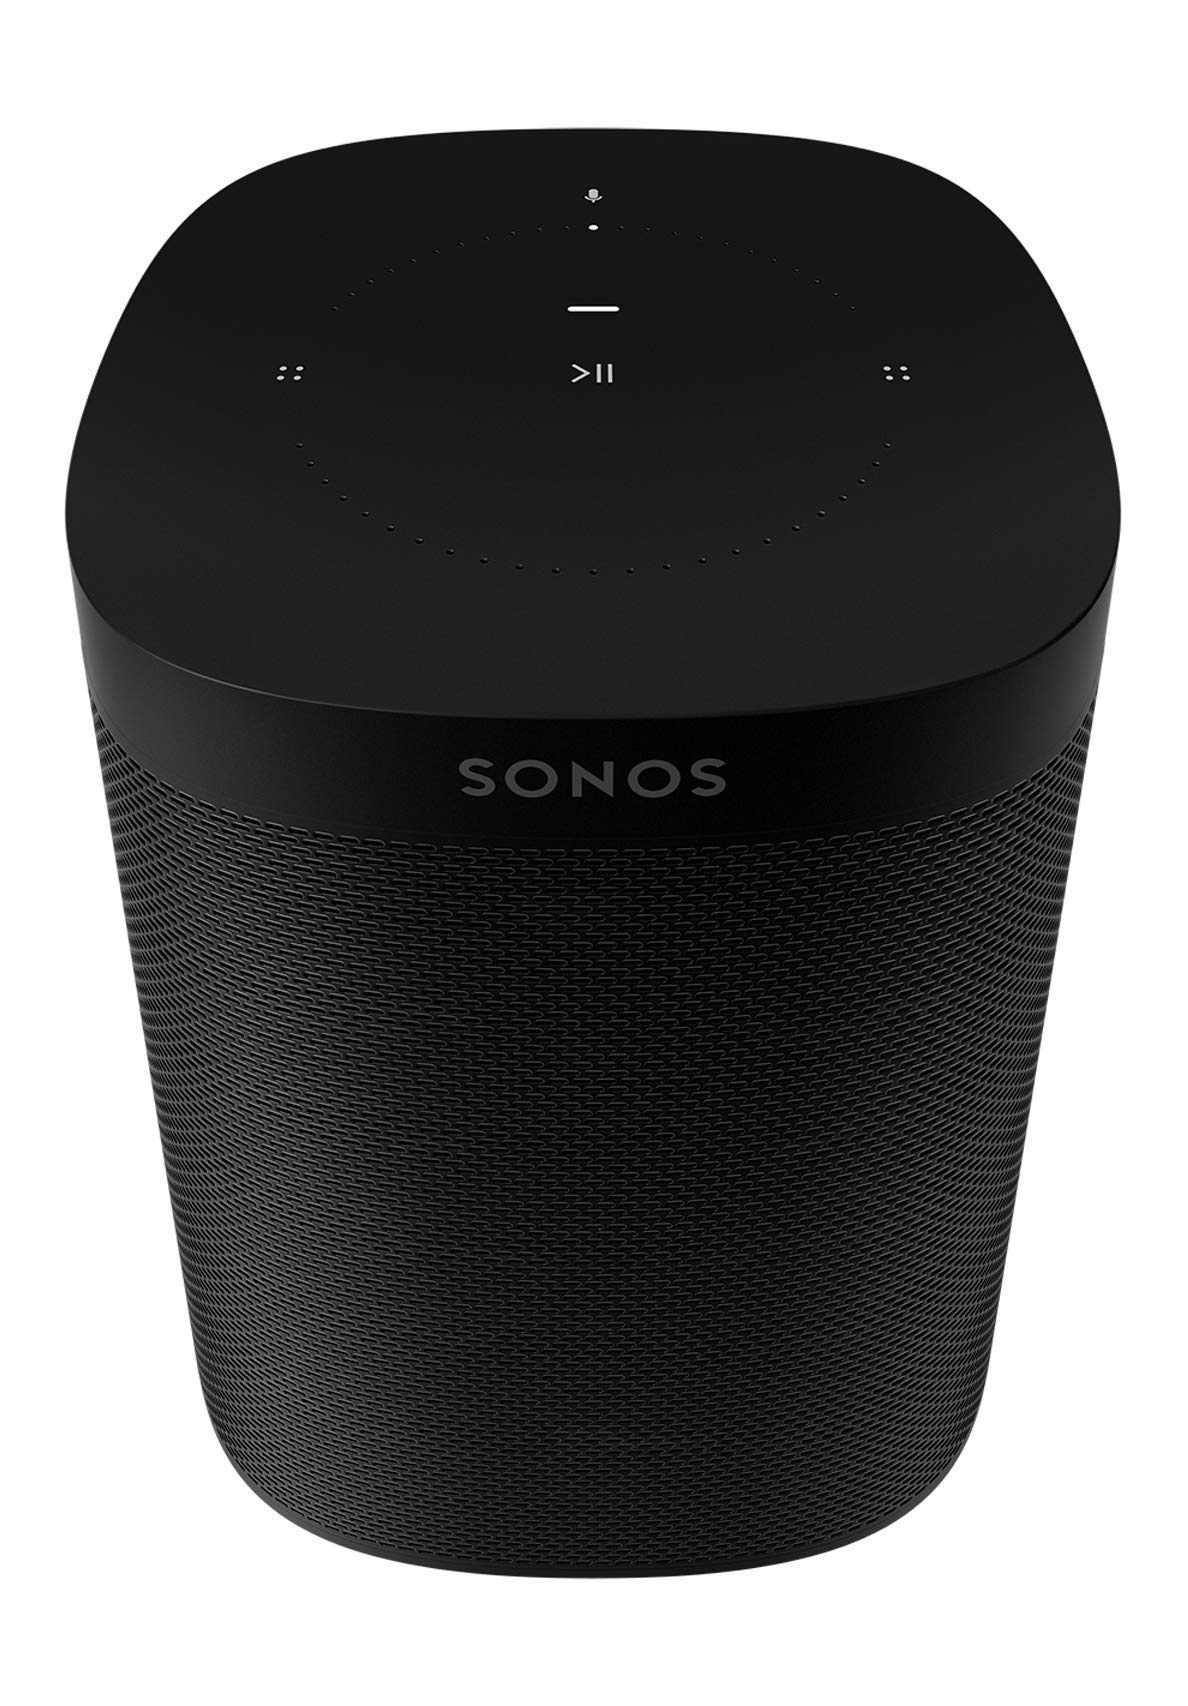 Sonos One Gen 2 (2019) vs Libratone Zipp 2 (2019) - Slant